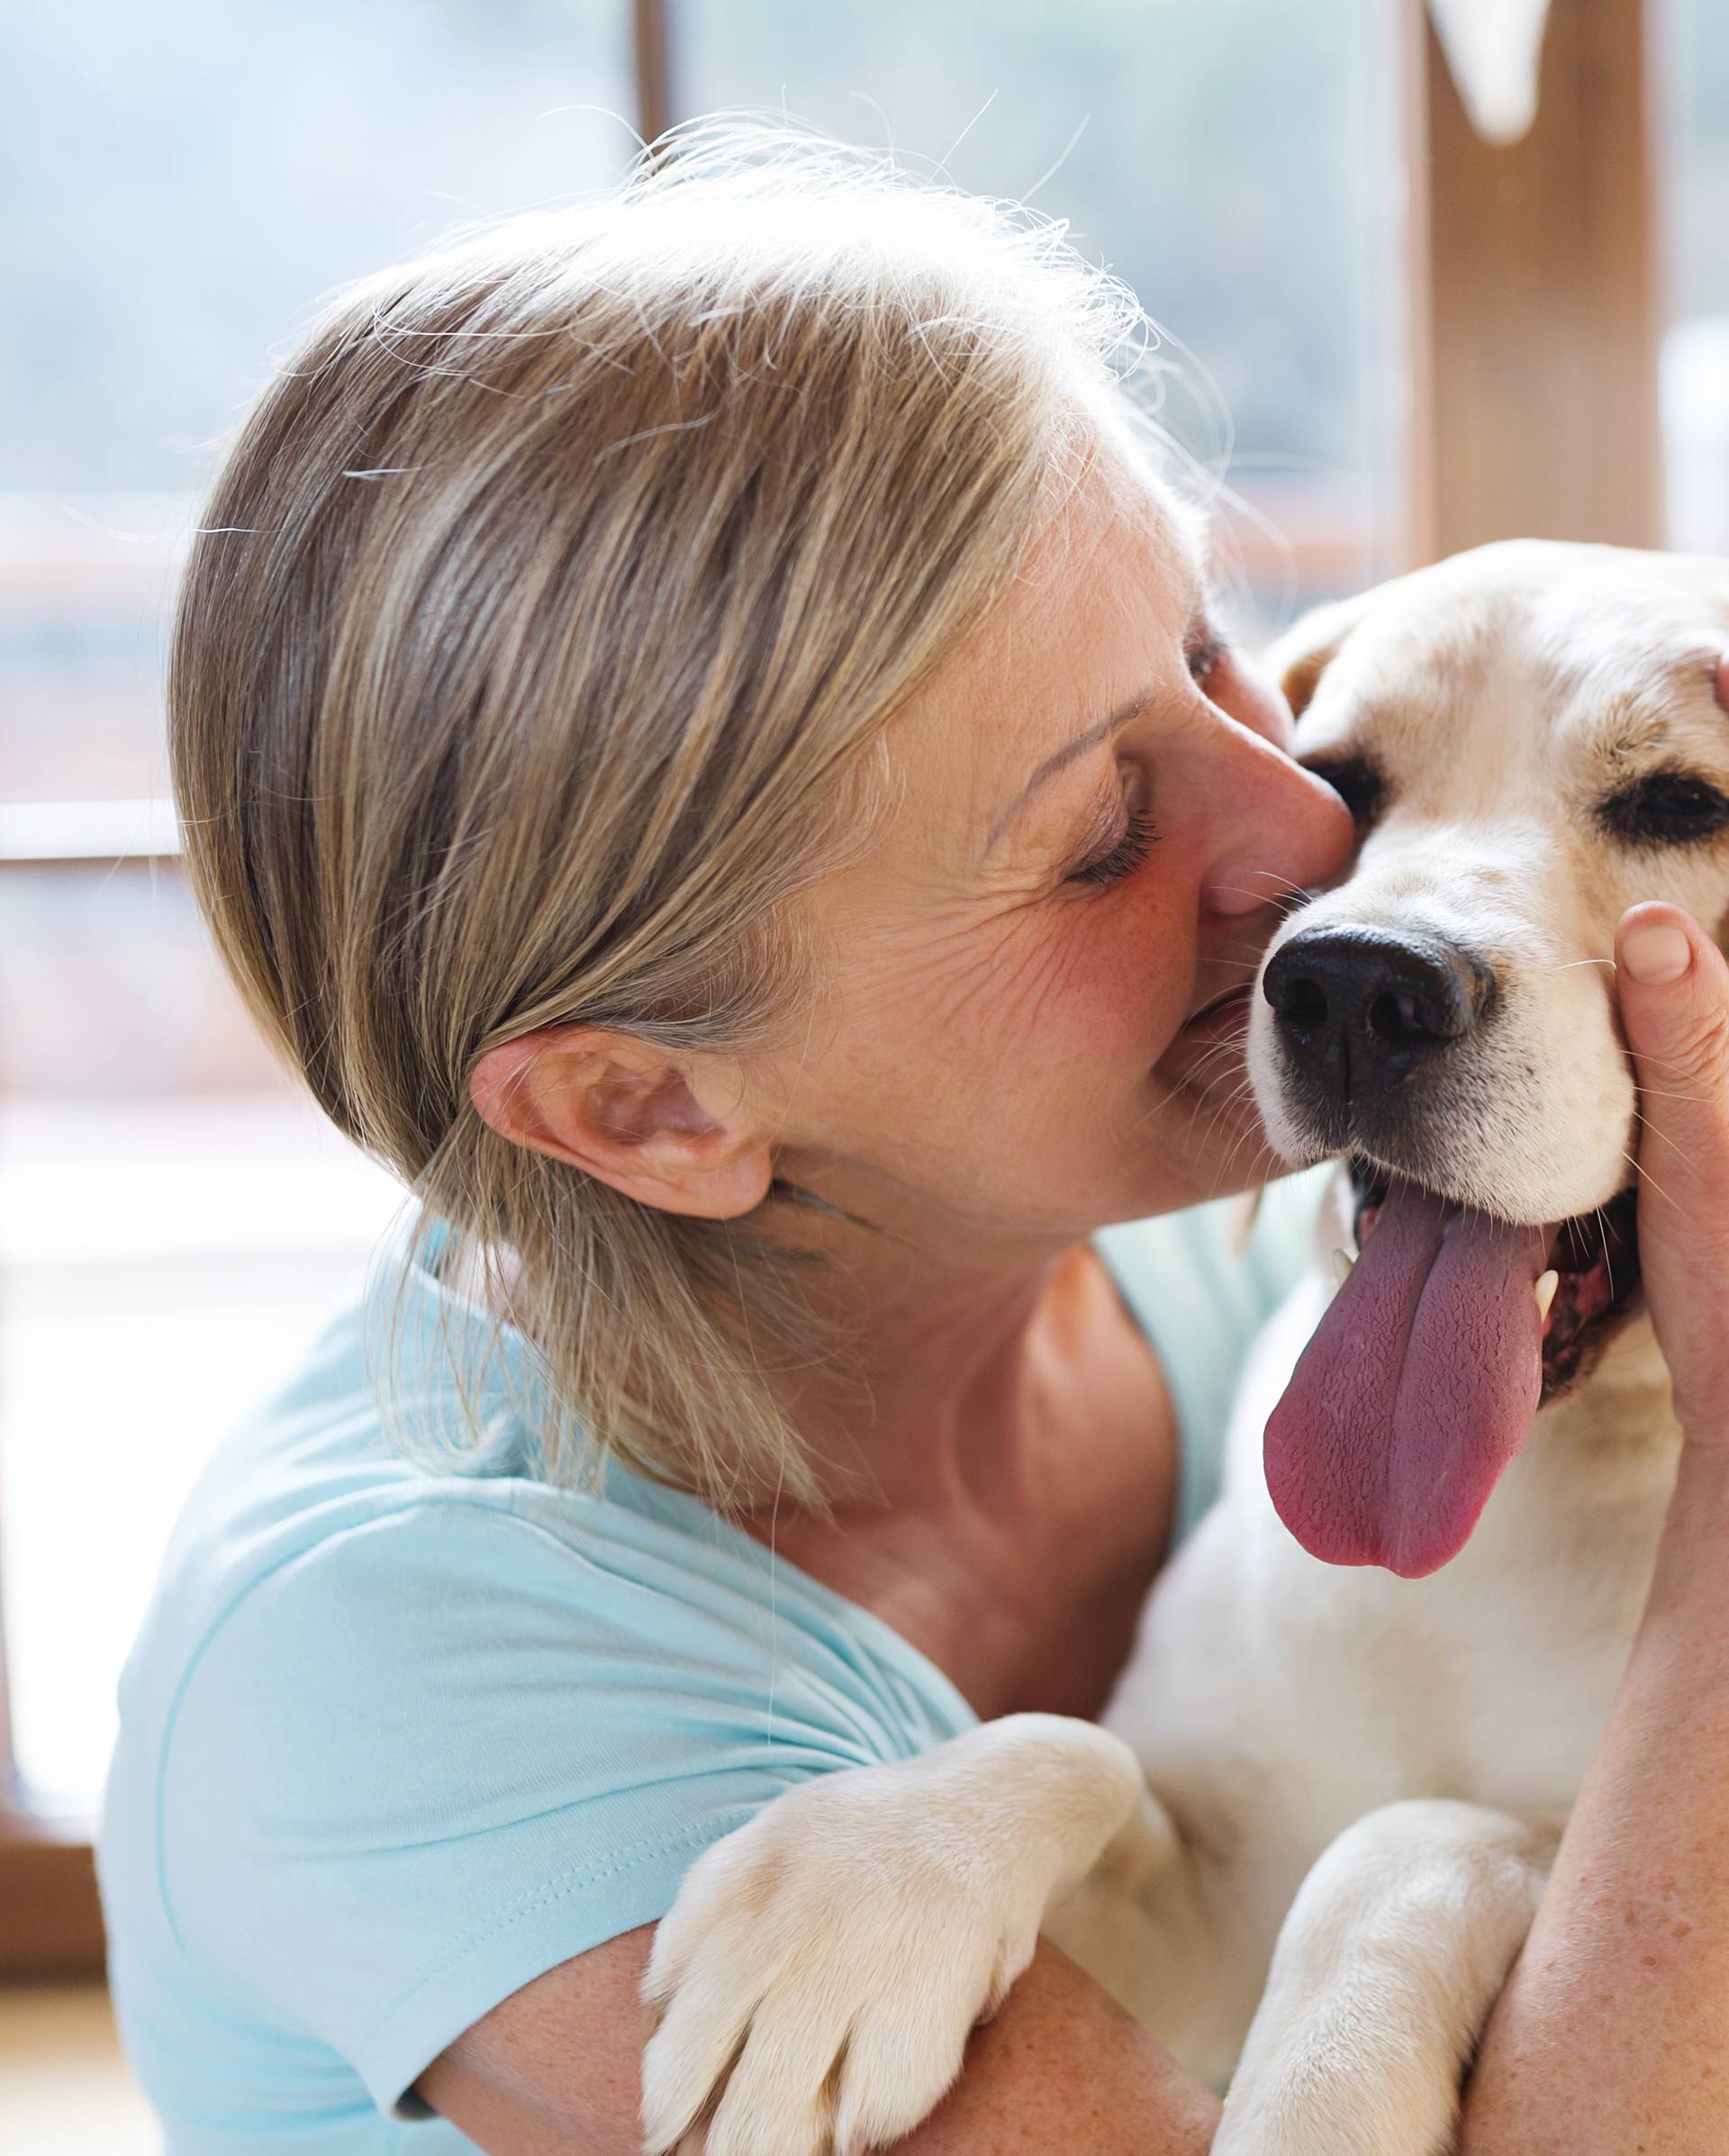 Terapija ljubavlju: Pas vraća život i oslobađa od depresije